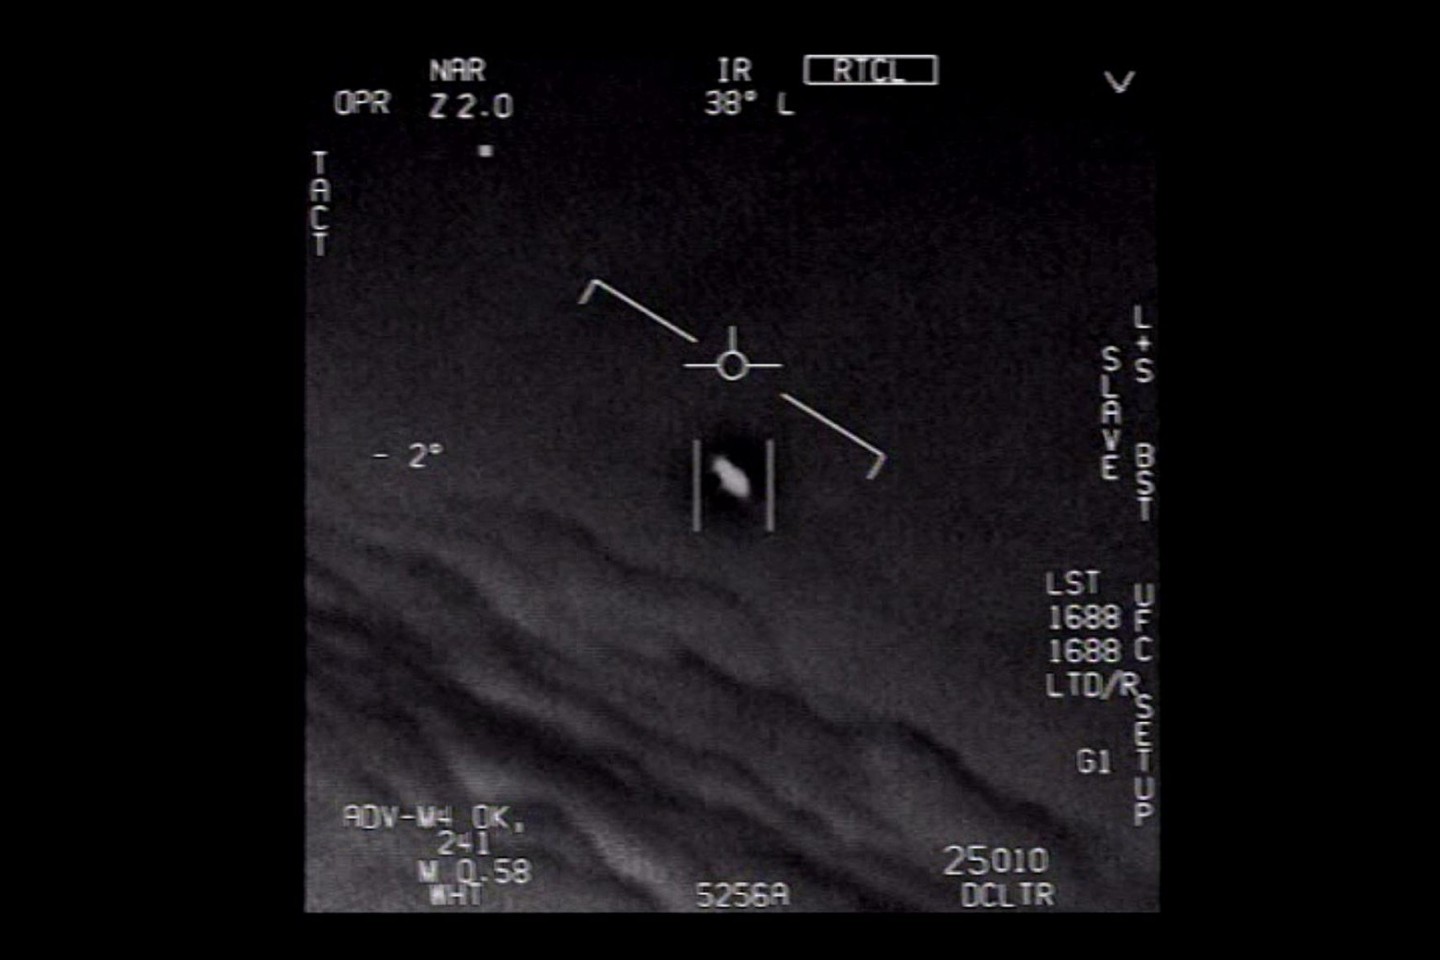 Das Standbild eines vom US-Verteidigungsministerium veröffentlichten Videos zeigt ein Unidentifiziertes Flugobjekt, das von Piloten der US-Marine gesichtet wurde.